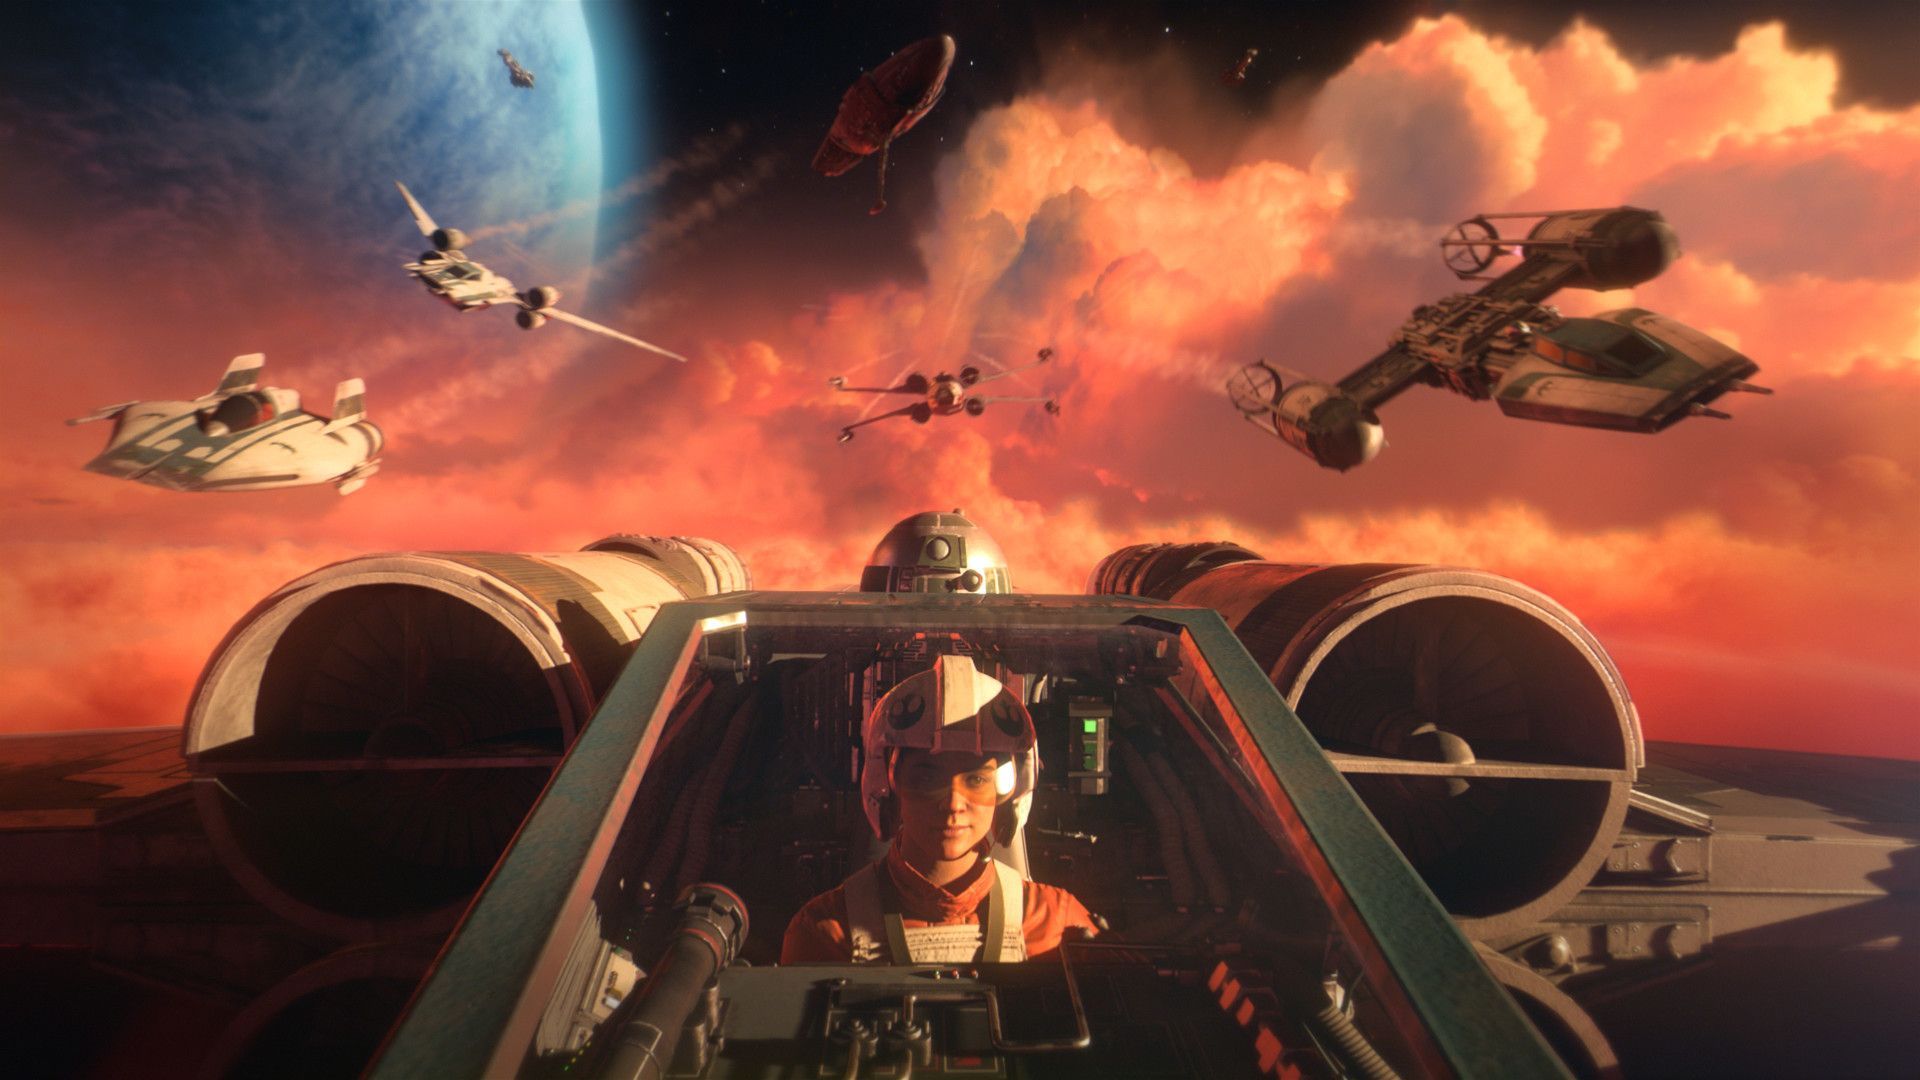 سی دی کی اریجینال Origin بازی Star Wars: Squadrons